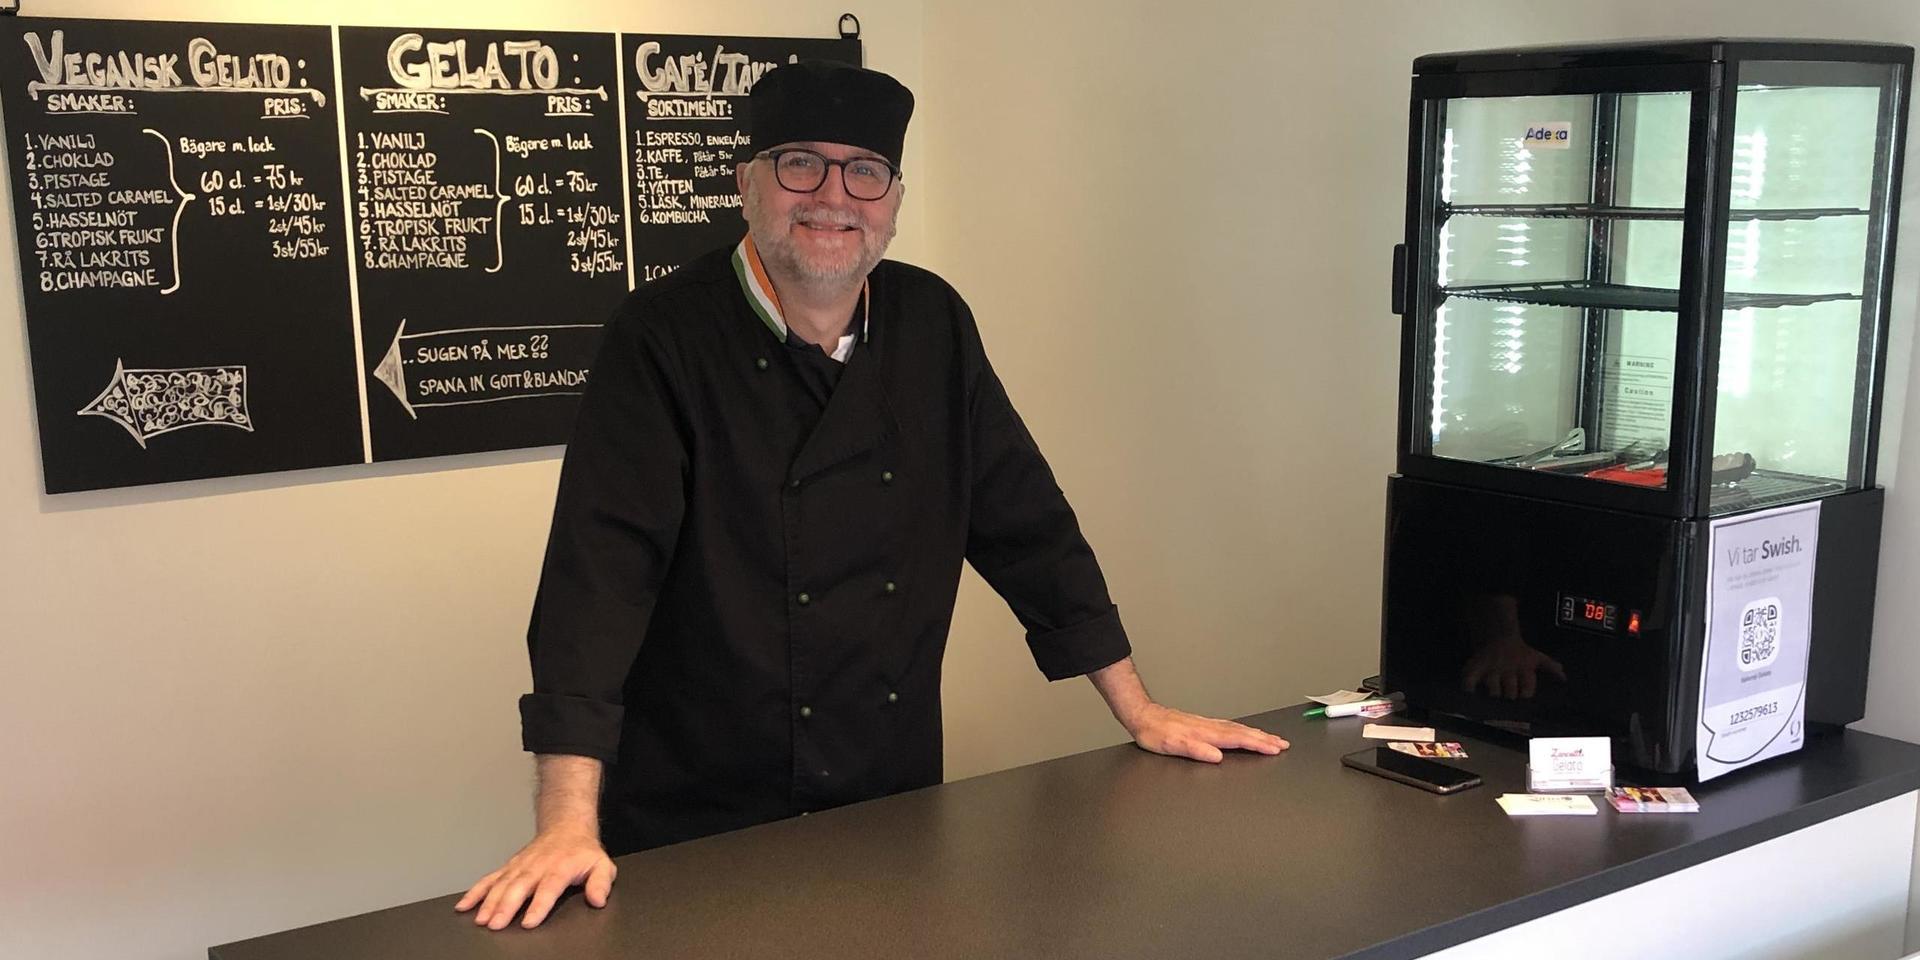  Mikael Zancotti hoppas kunna nå framgång med sin nya glassbar.